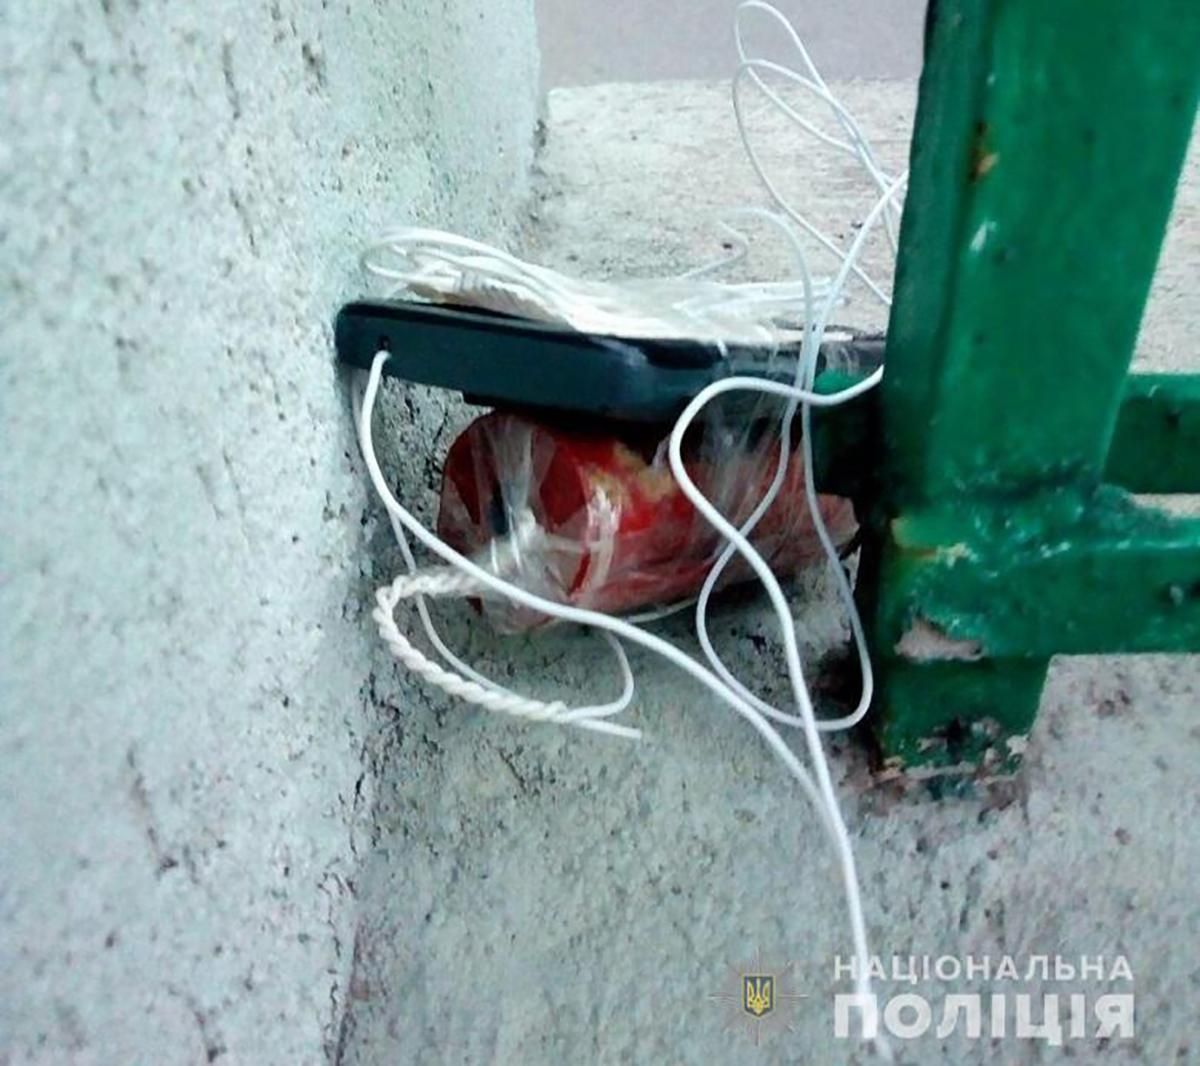 Возле офиса ОПЗЖ в Киеве нашли взрывчатку: полиция уже обезвредила ее